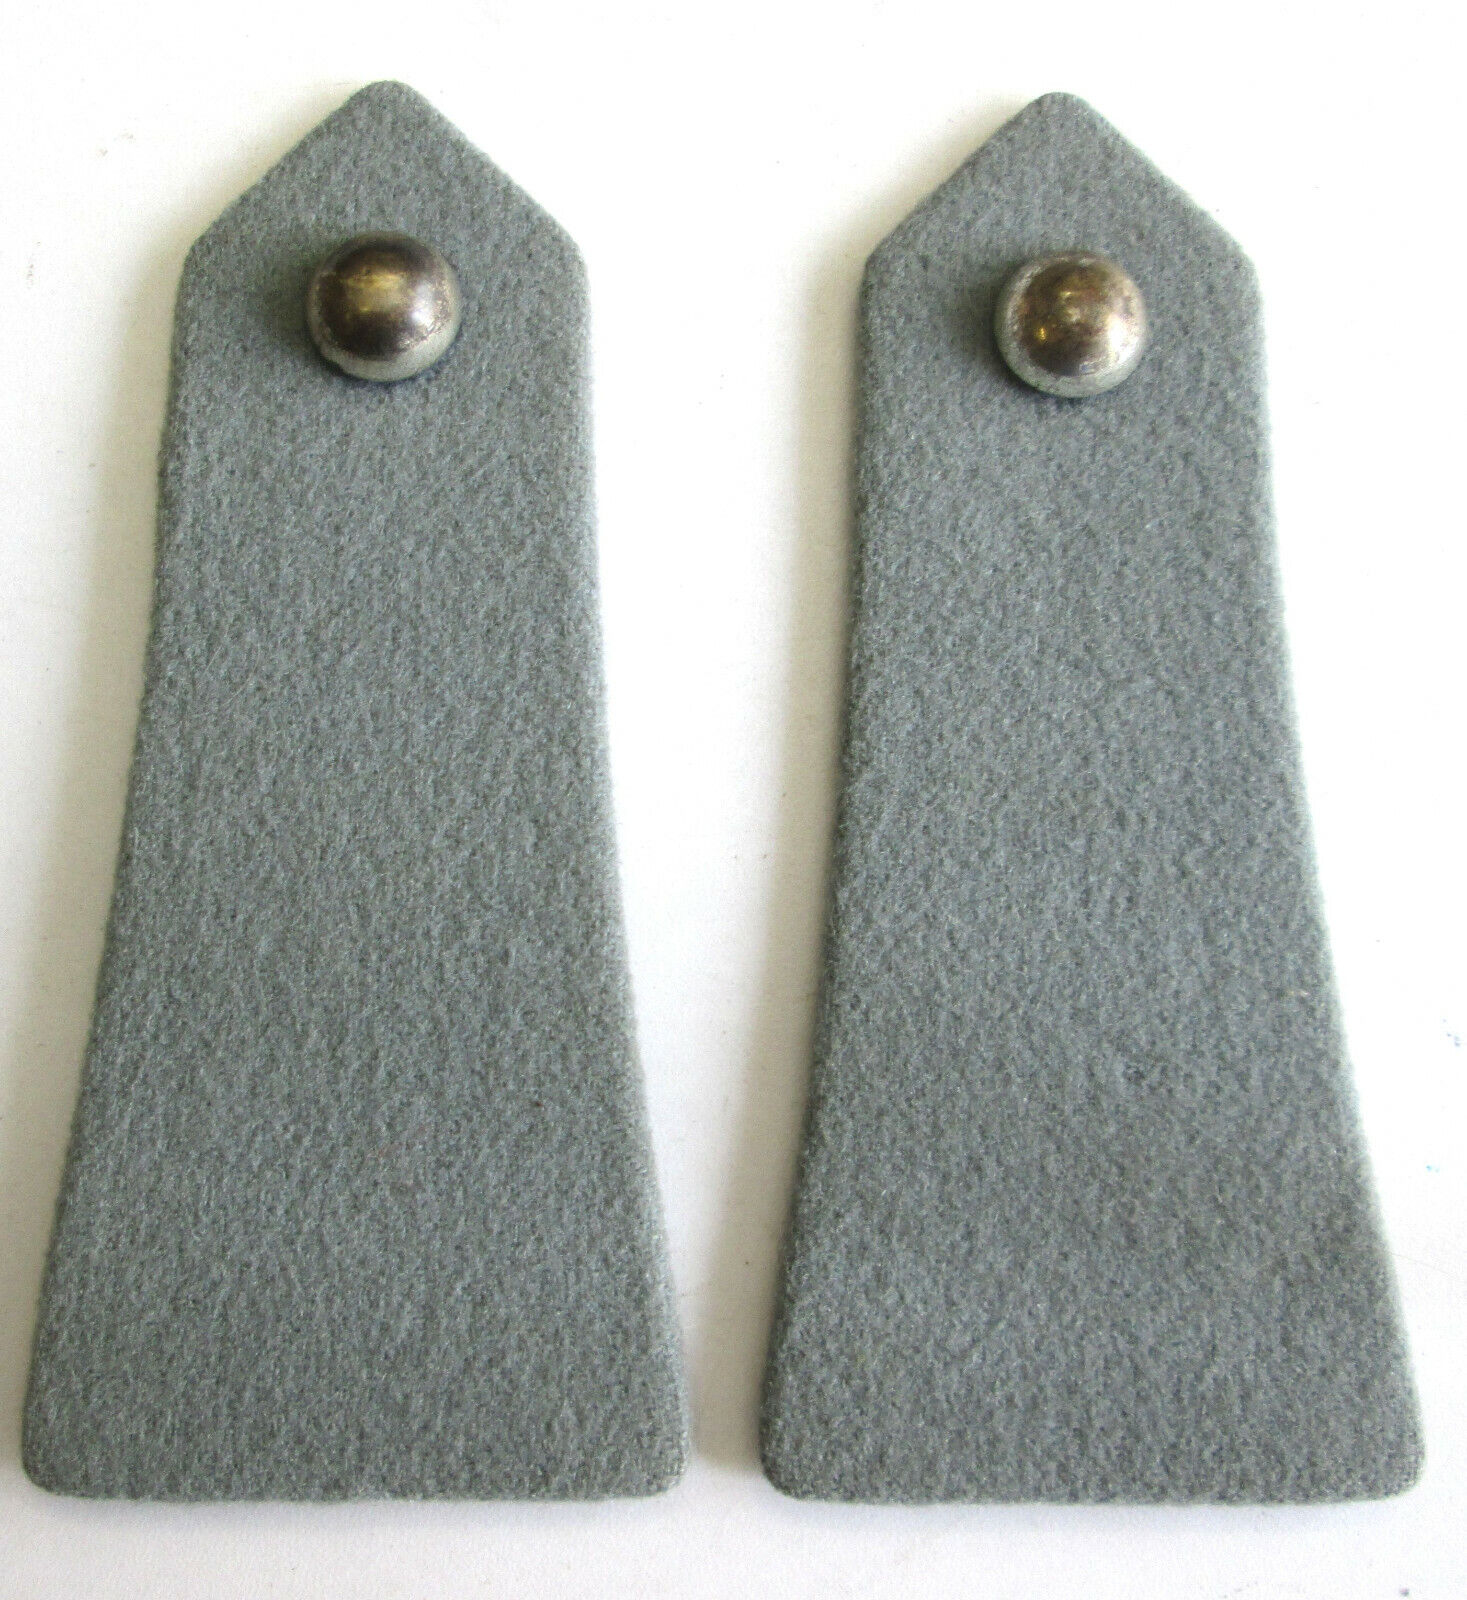 MATERIEL Pattes d'épaules gris cendré pour blouson mle 1946 ou veste mle 1959/61